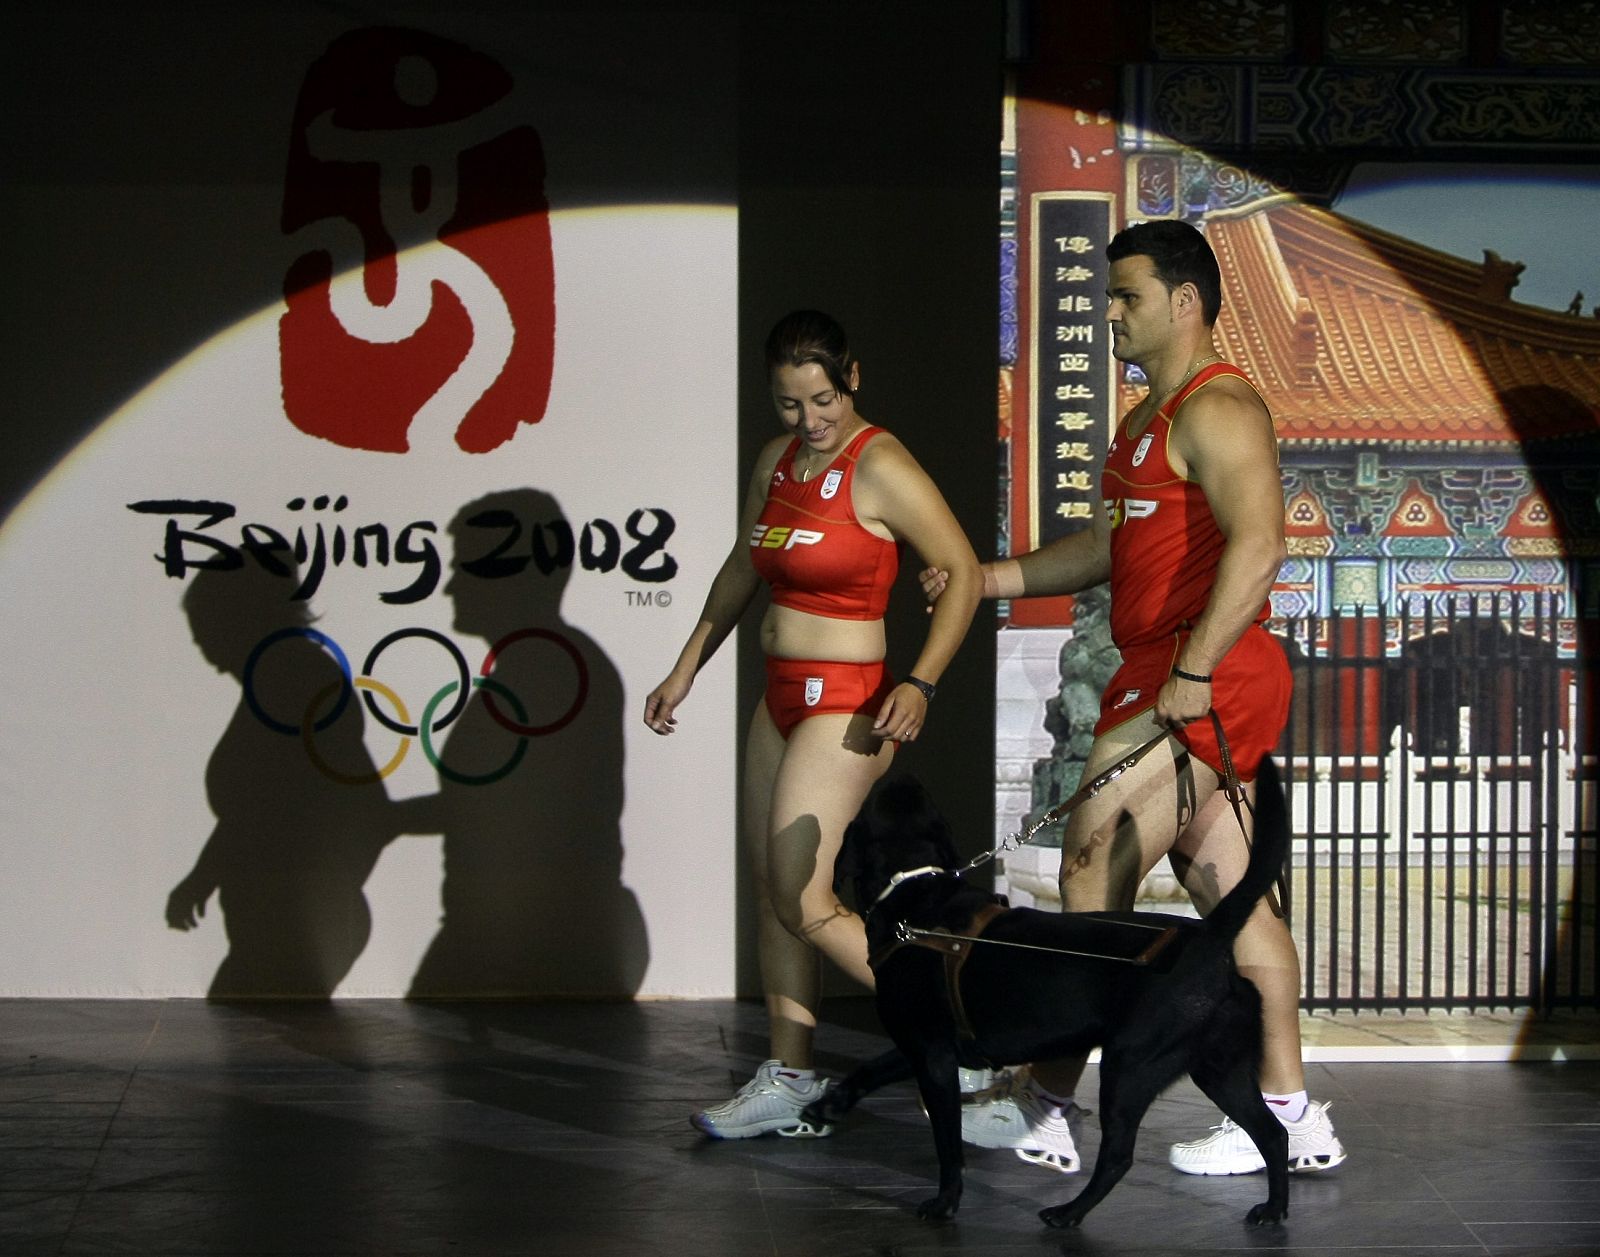 El atleta Casinos y su guía Mestre durante la presentación del uniforme olímpico en Madrid.